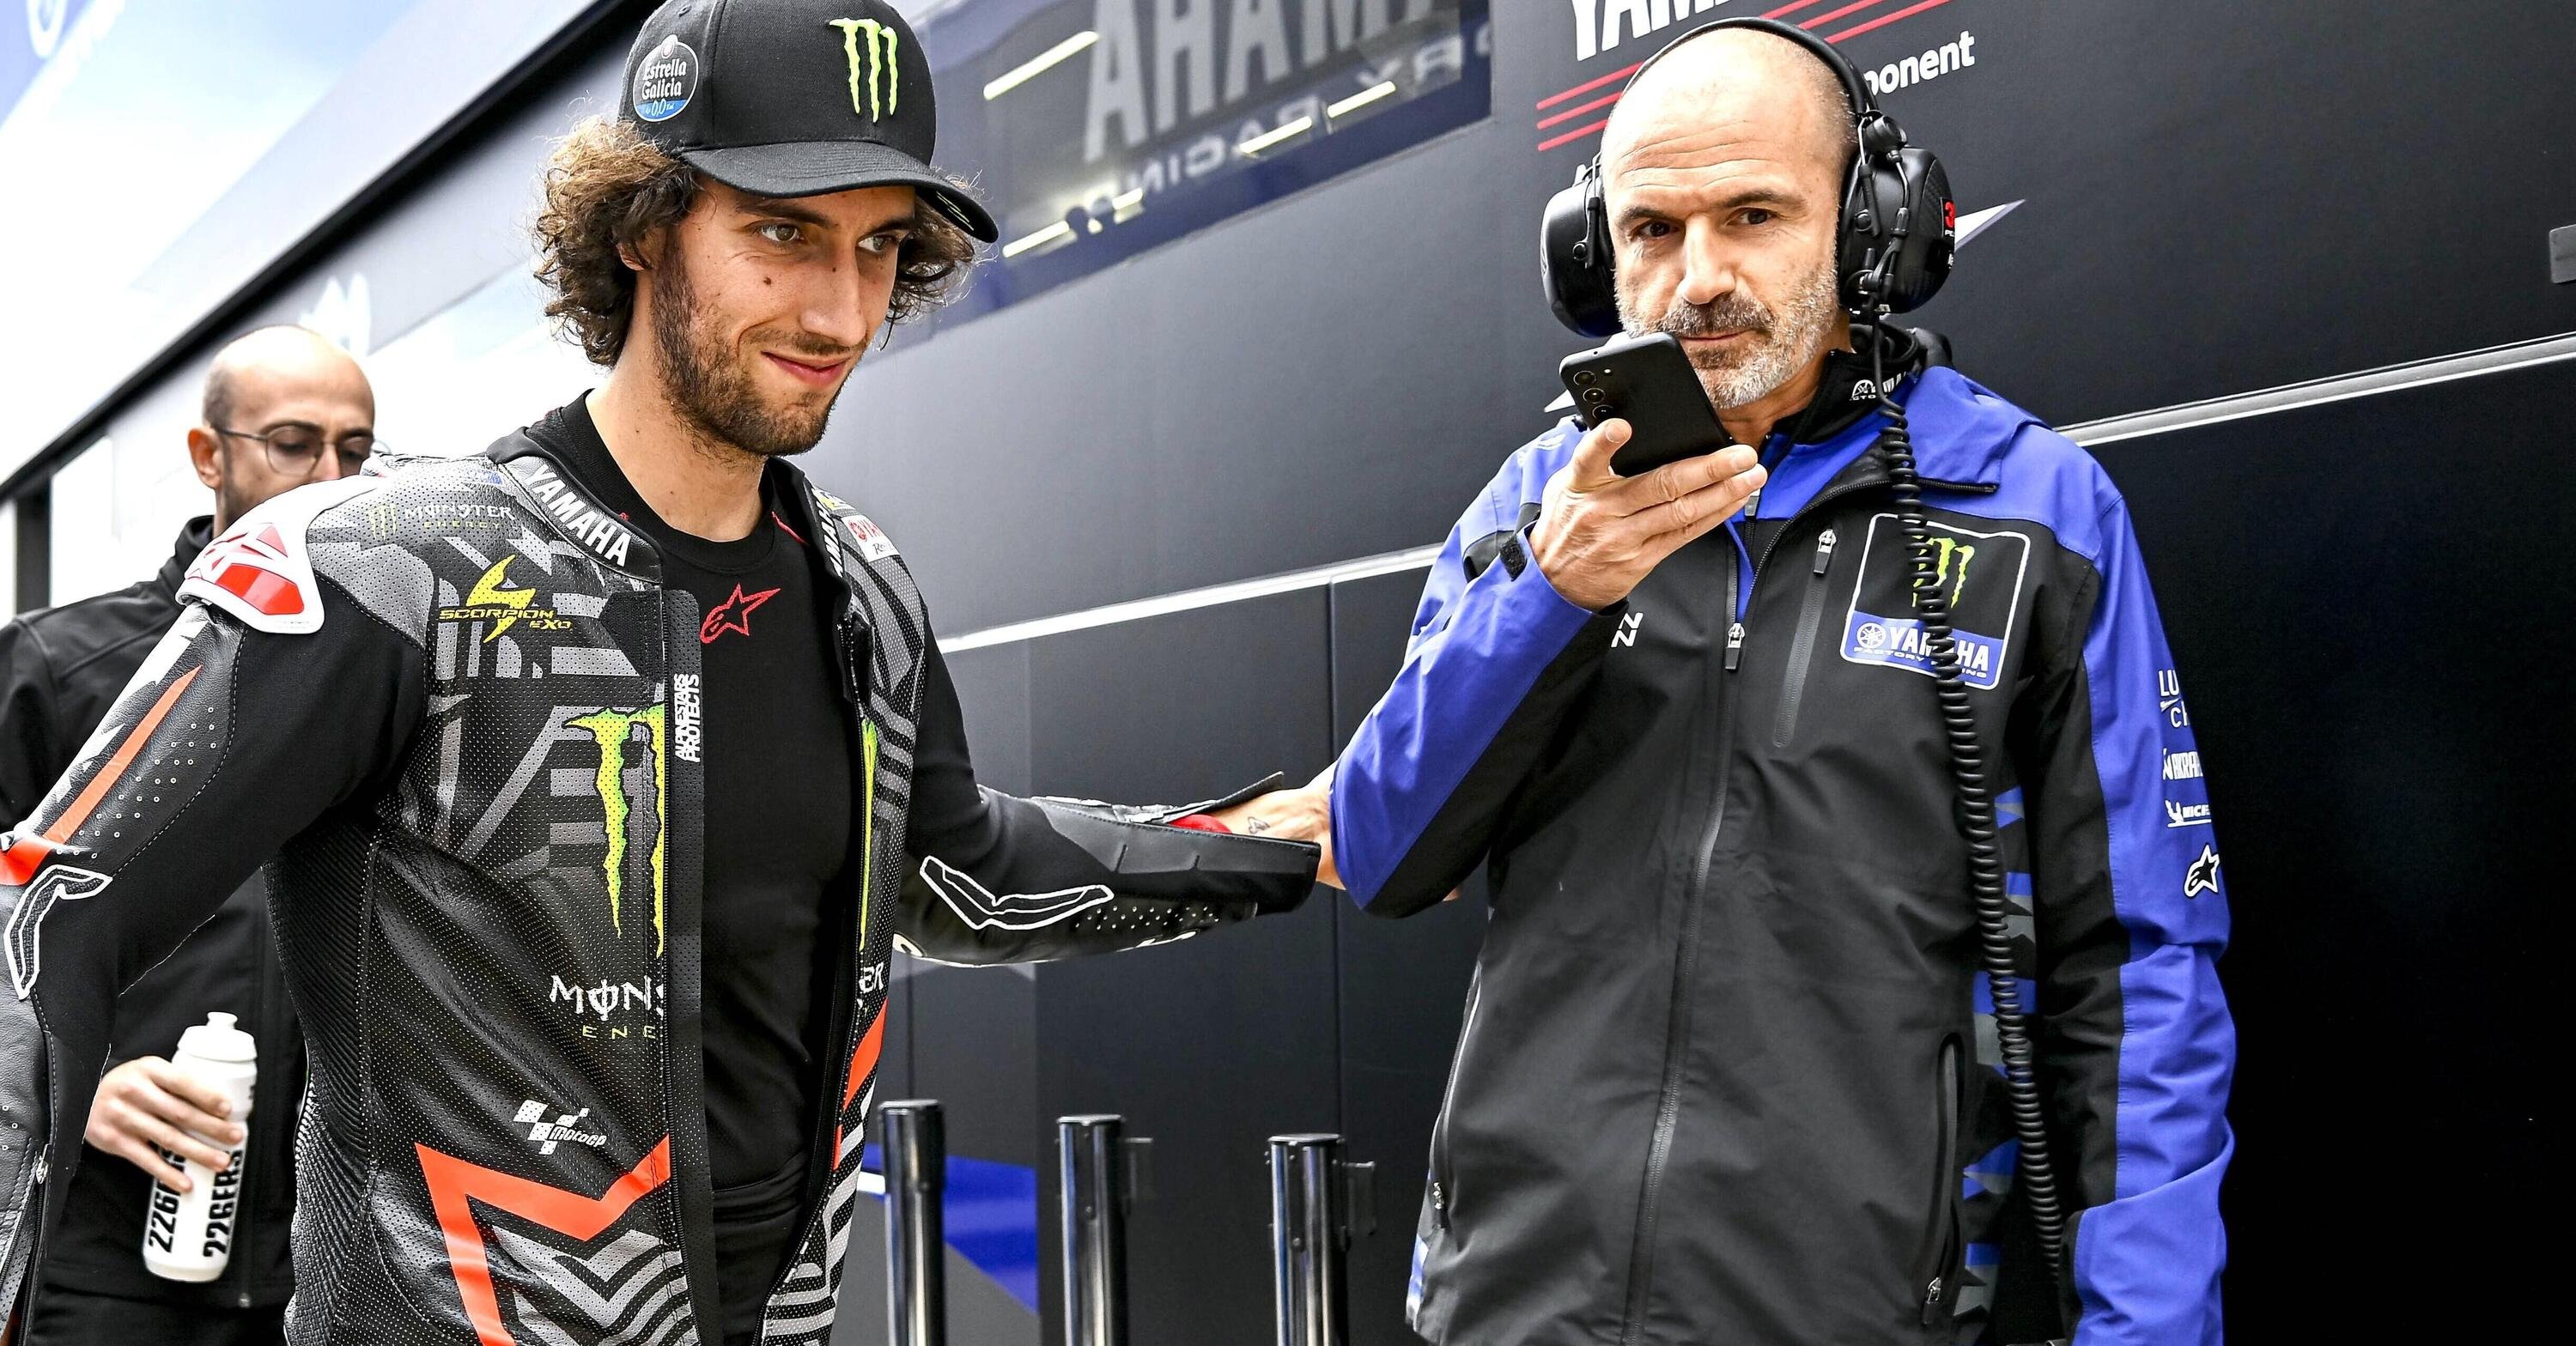 MotoGP 2023. Alex Rins sorriso valenciano: &quot;Con Yamaha freno molto pi&ugrave; forte che con Suzuki!&quot;